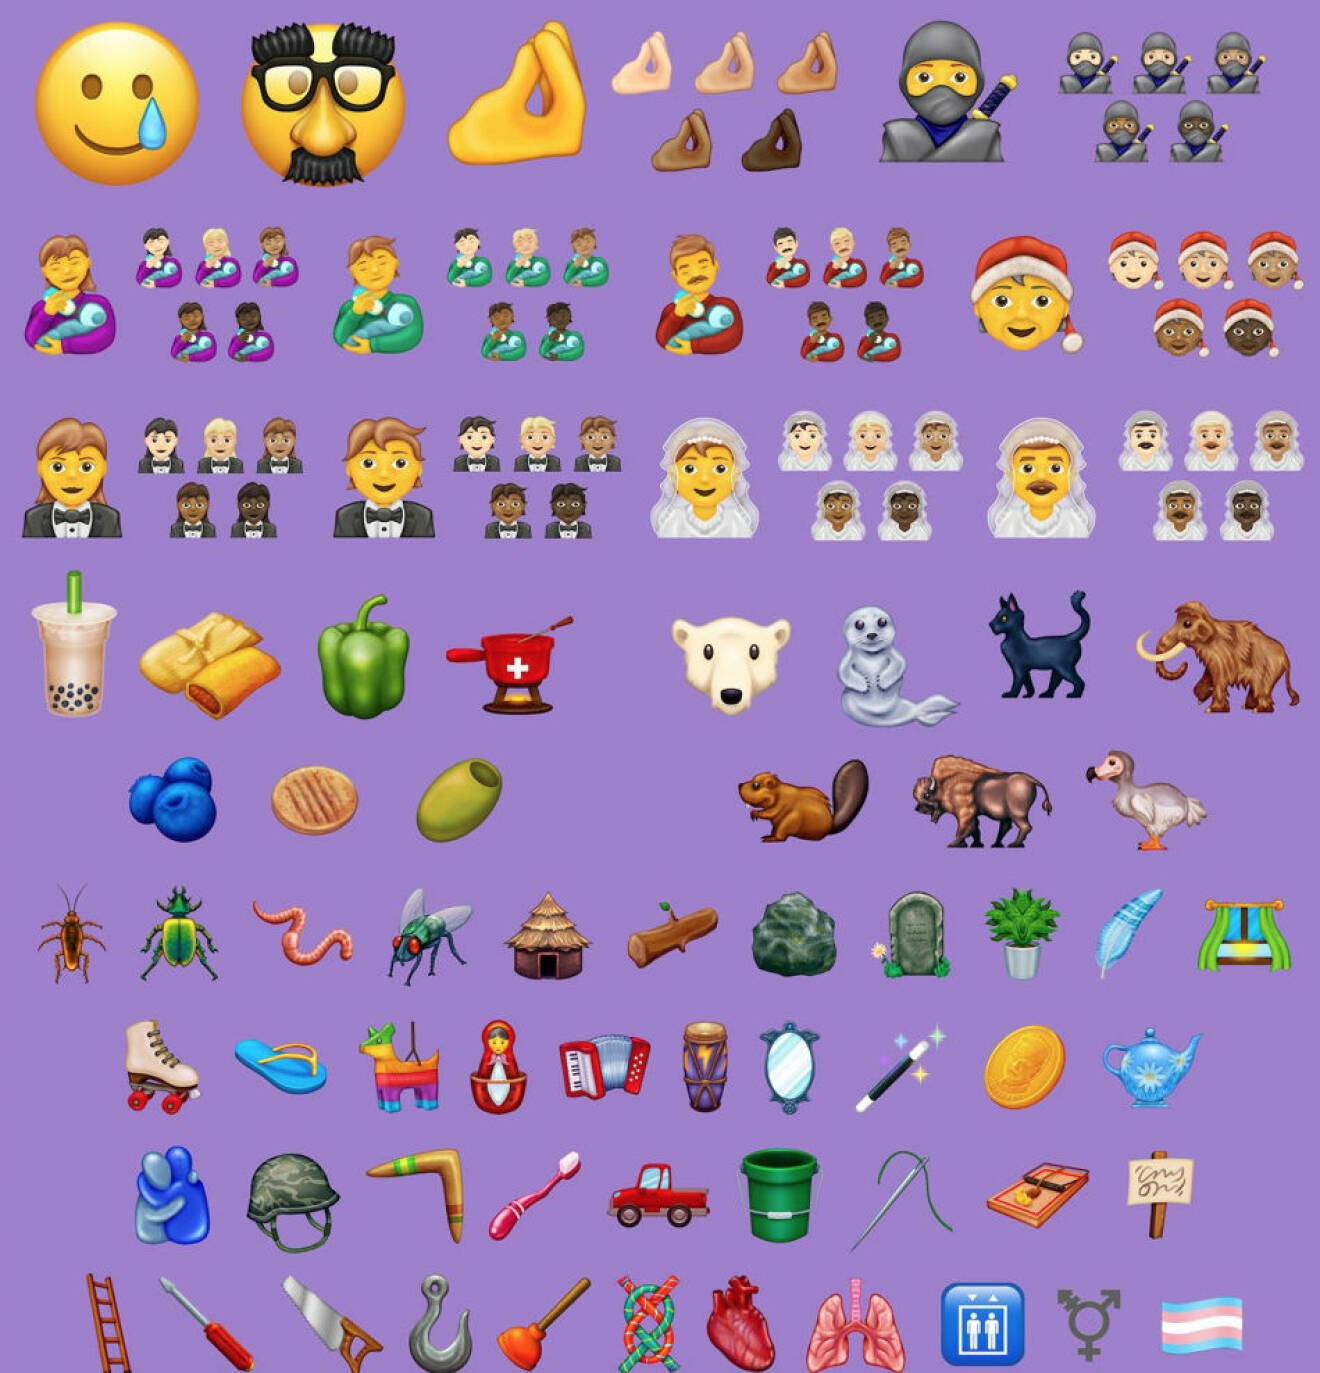  Alla 117 nya emojis för 2020.